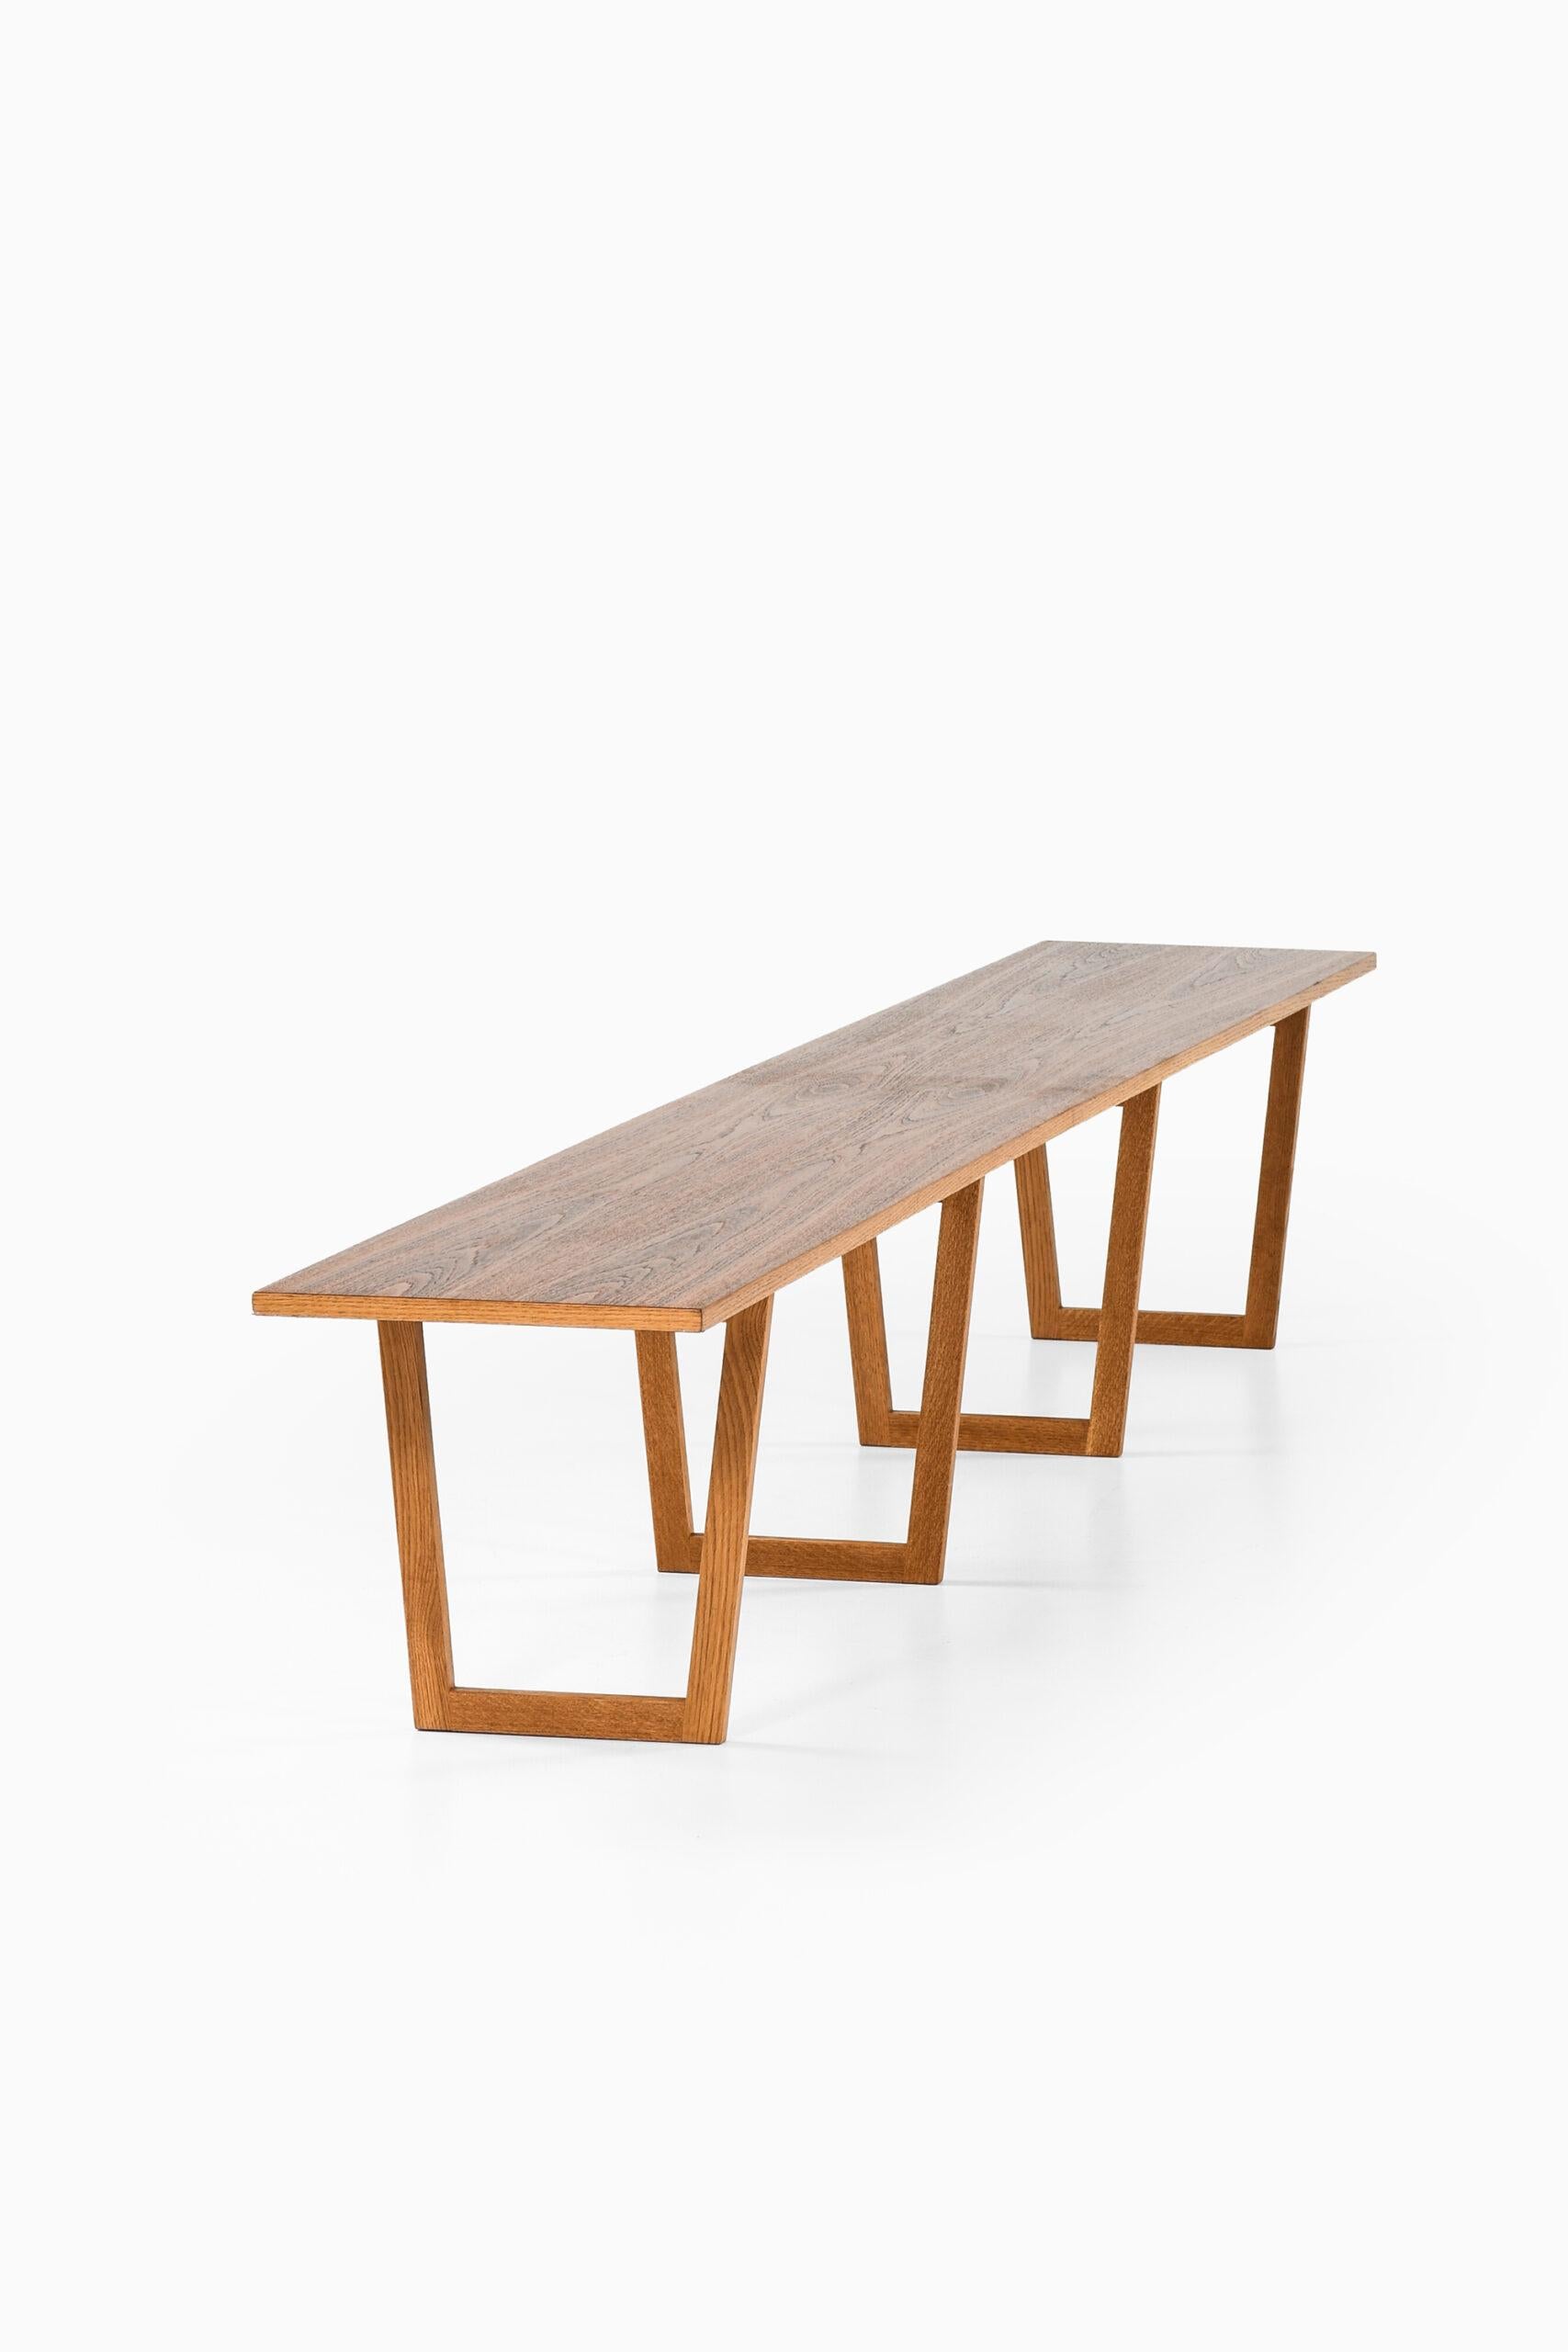 Oak Kurt Østervig Side Table or Bench Produced by Jason Møbler in Denmark For Sale